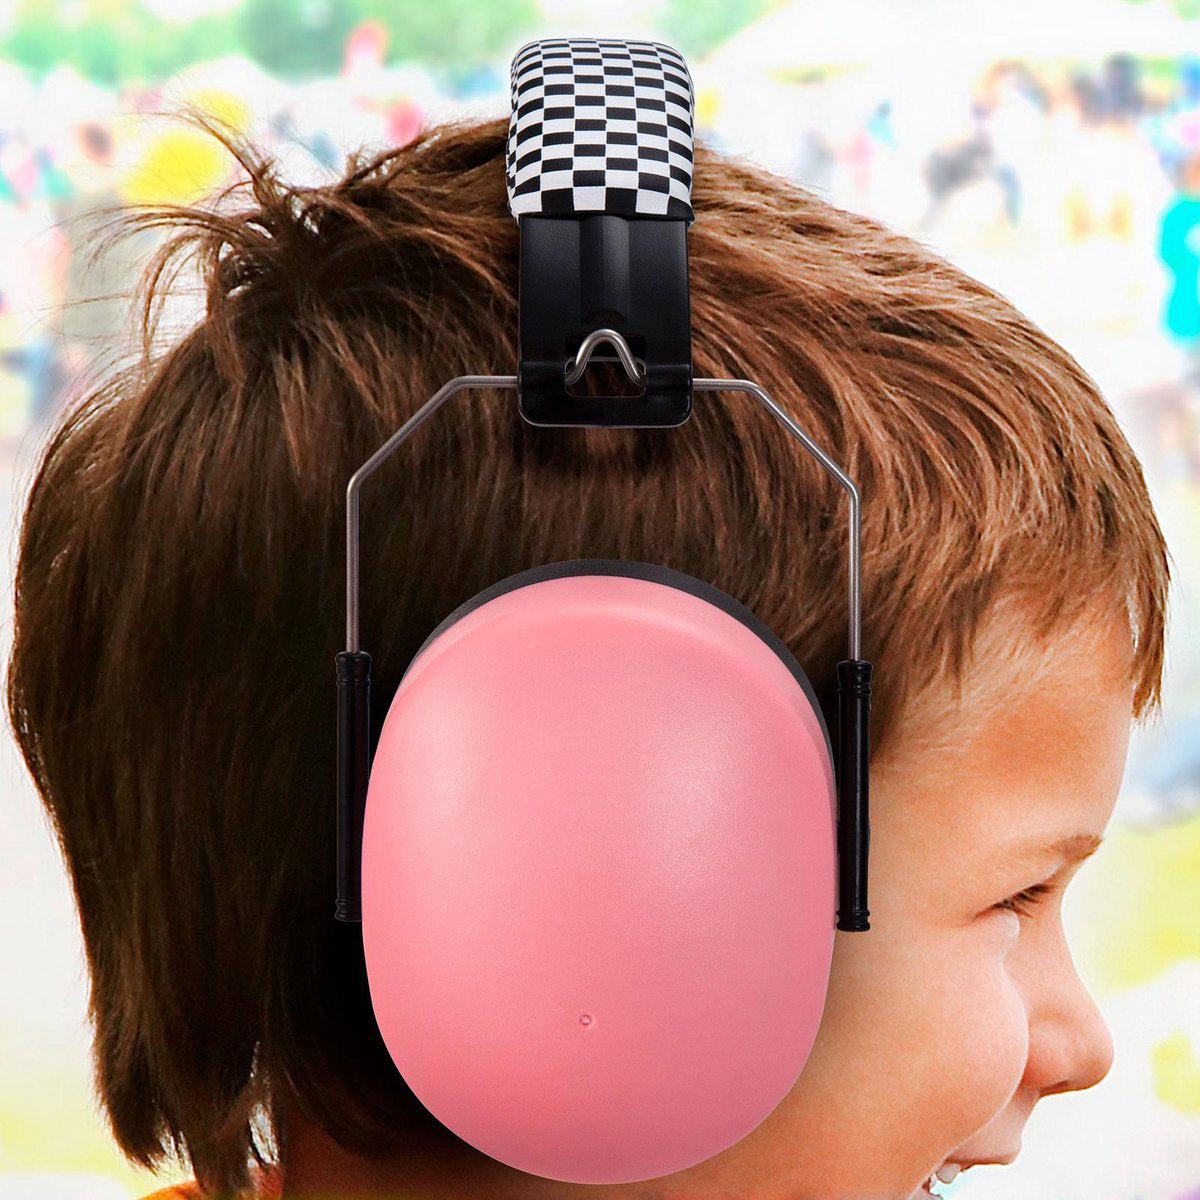 Bescherm het gehoor van je kleintje met Alecto oorbeschermers baby roze. Het gehoor van een kind is nog volop in ontwikkeling en daardoor natuurlijk minder goed bestand tegen hard geluid. VanZus